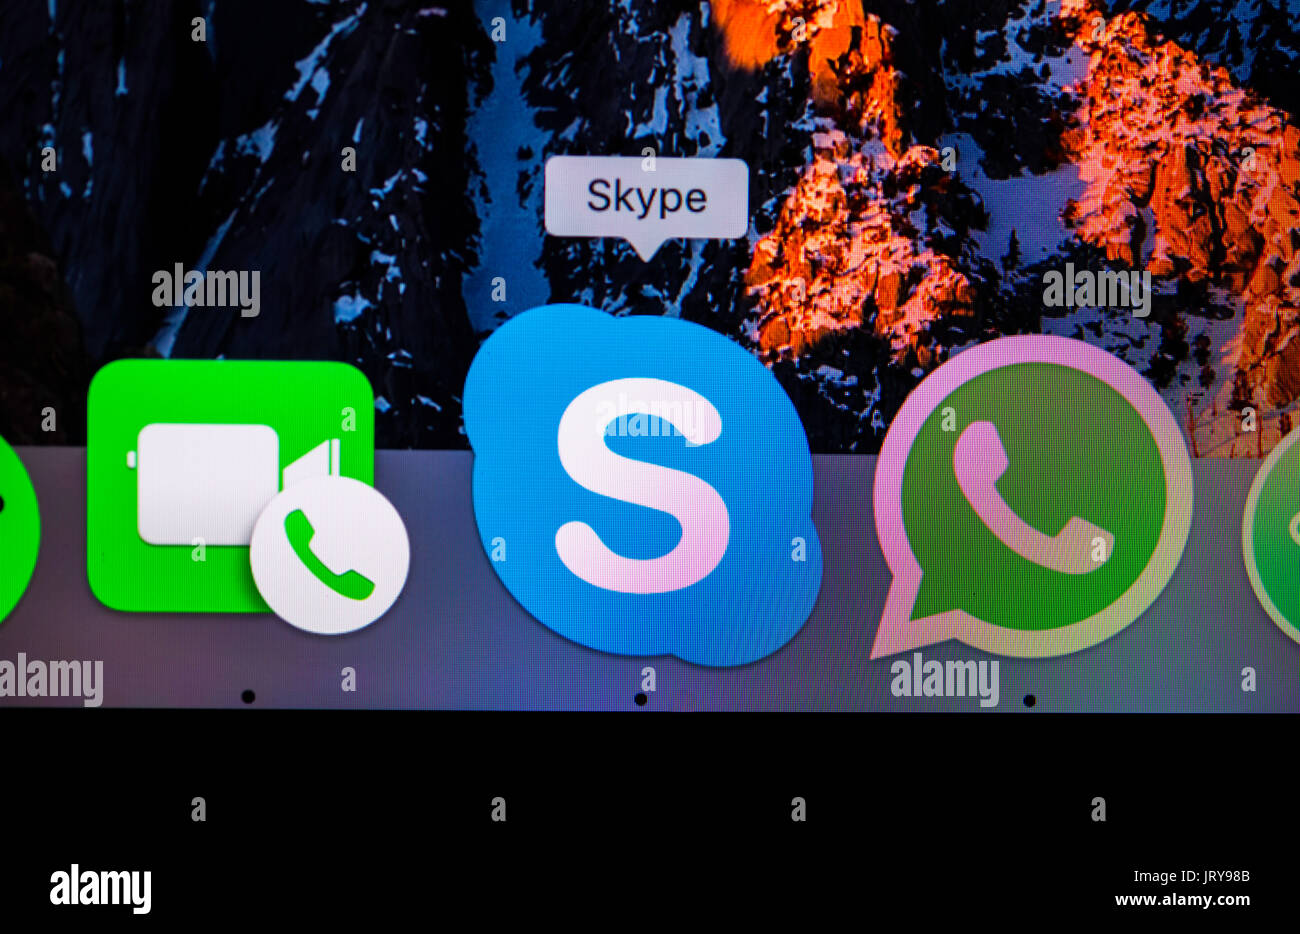 Icône, logo, Skype, service de messagerie instantanée, macro shot, détail, full-frame, capture d'écran Banque D'Images